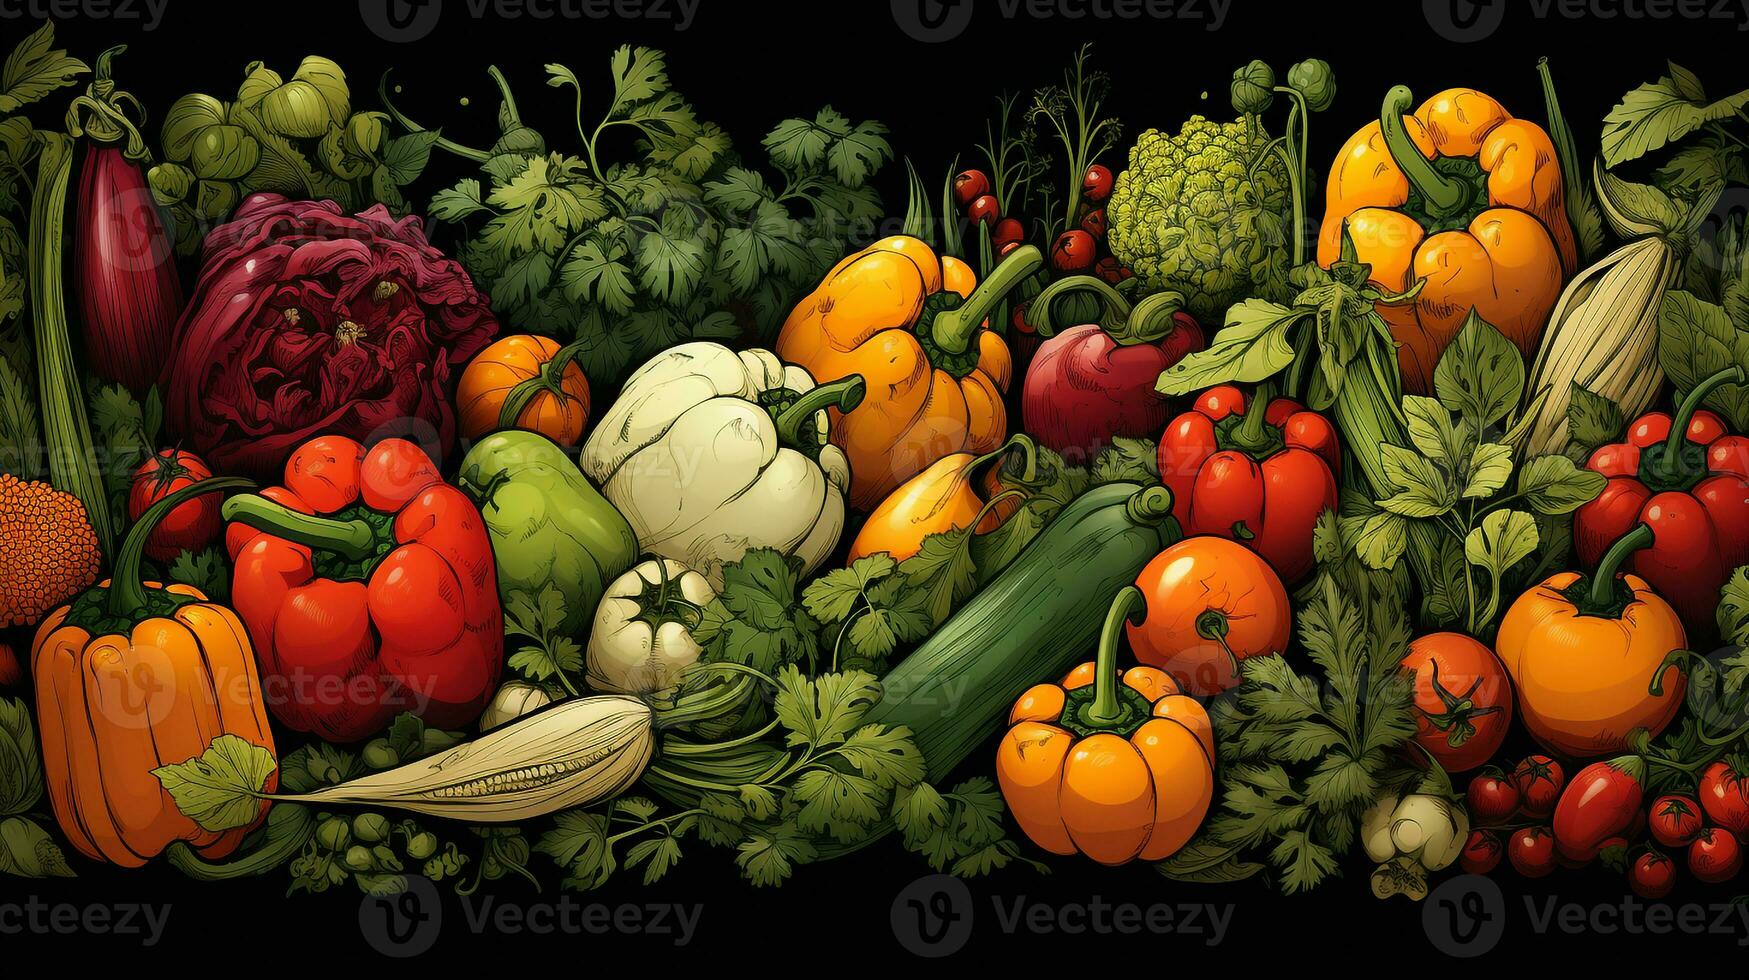 Hintergrund von verschiedene Arten von frisch Gemüse foto